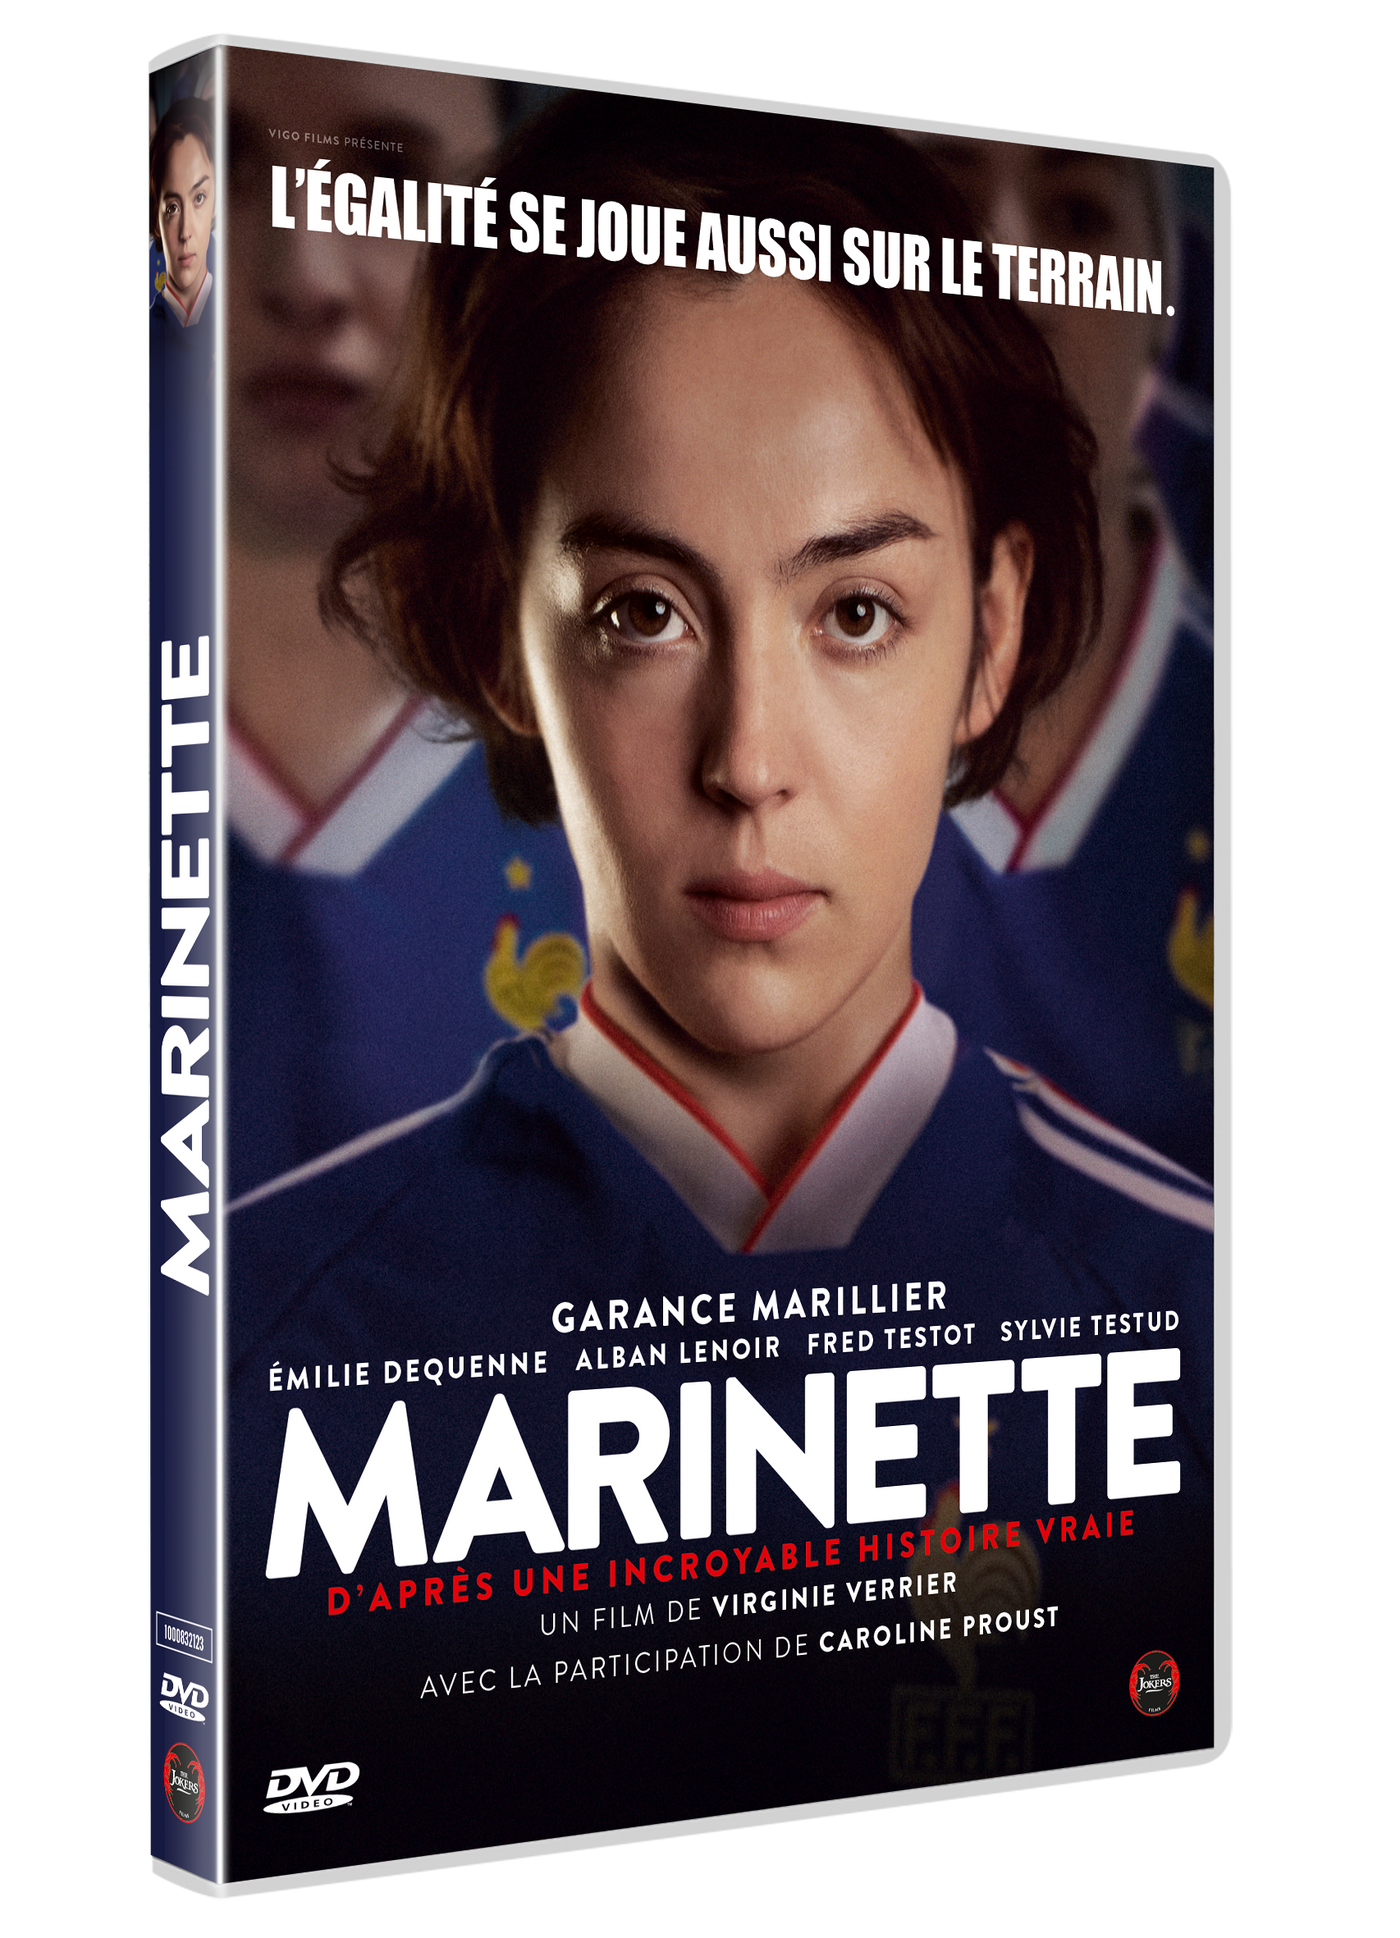 DVD "Marinette"